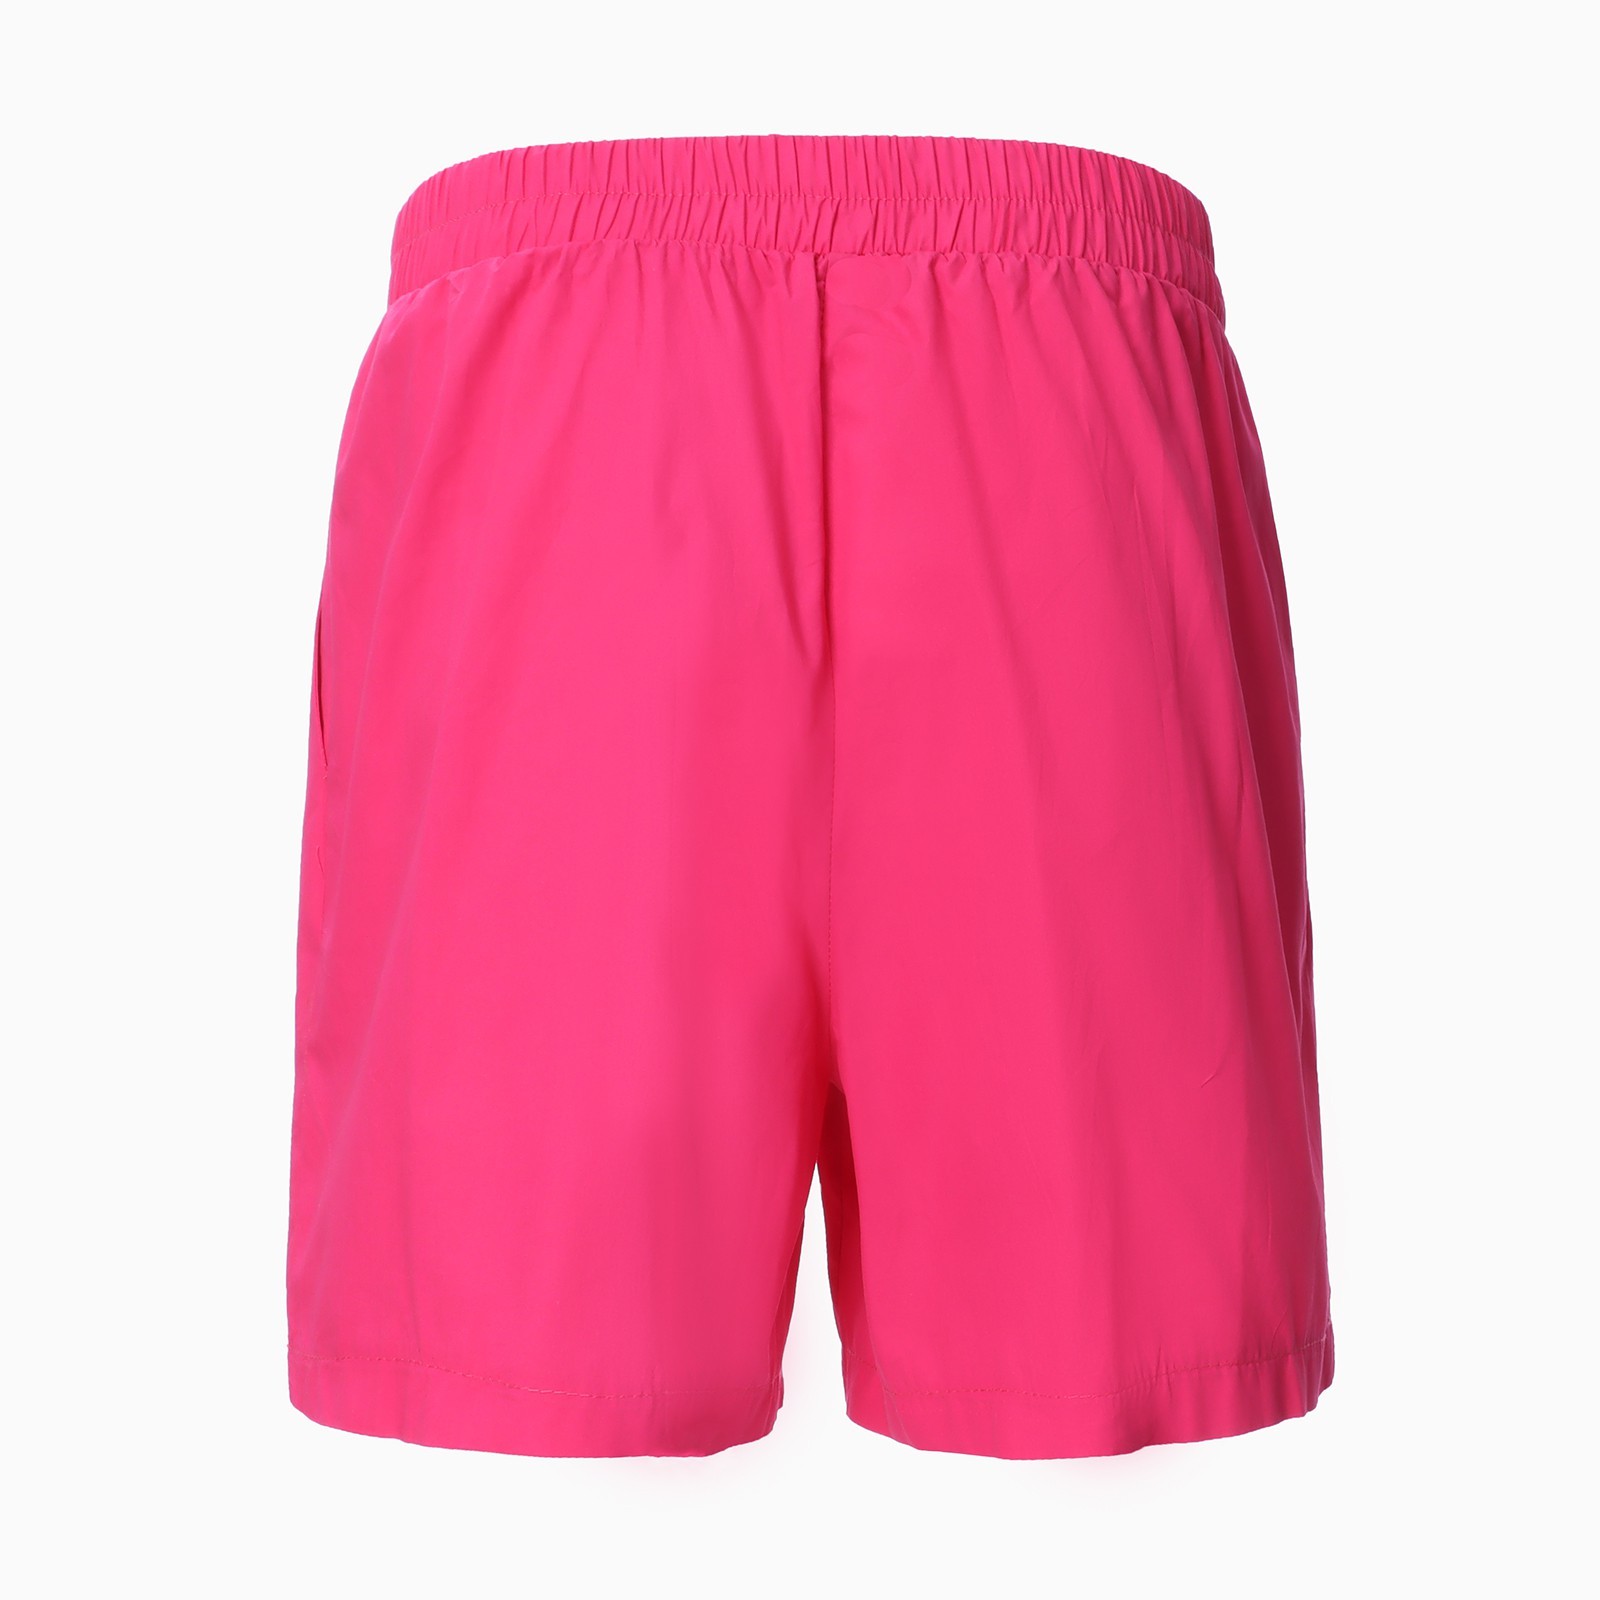 Костюм женский (рубашка и шорты) MIST Summer time, размер 46, розовый ...